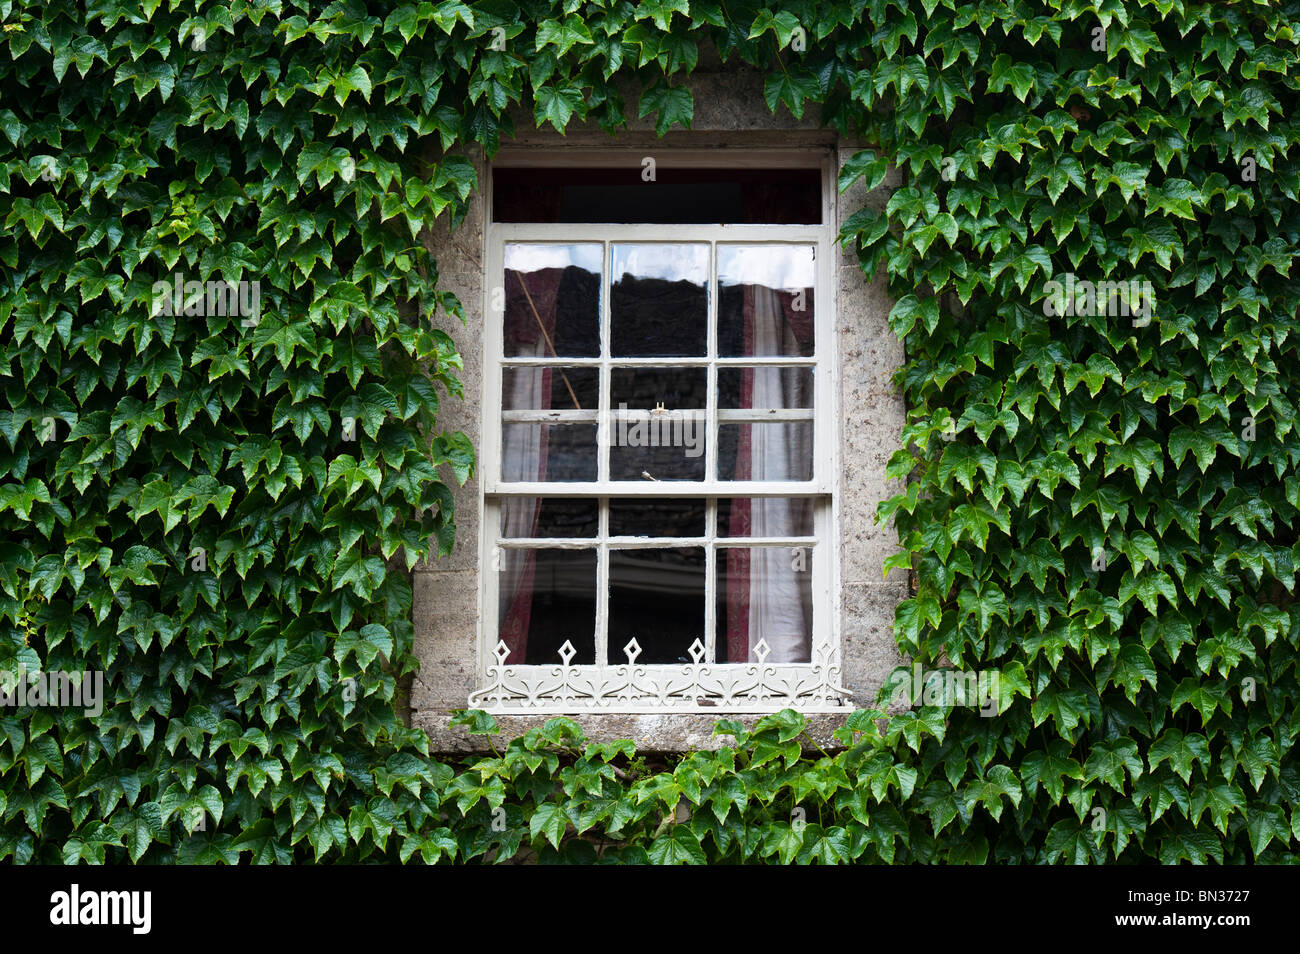 Parthenocissus Tricuspidata. Boston Ivy/Japanische Kriechgang für die Wand eines Hauses in der Umgebung einer alten hölzernen Schiebefenster. Cotswolds, UK. Stockfoto